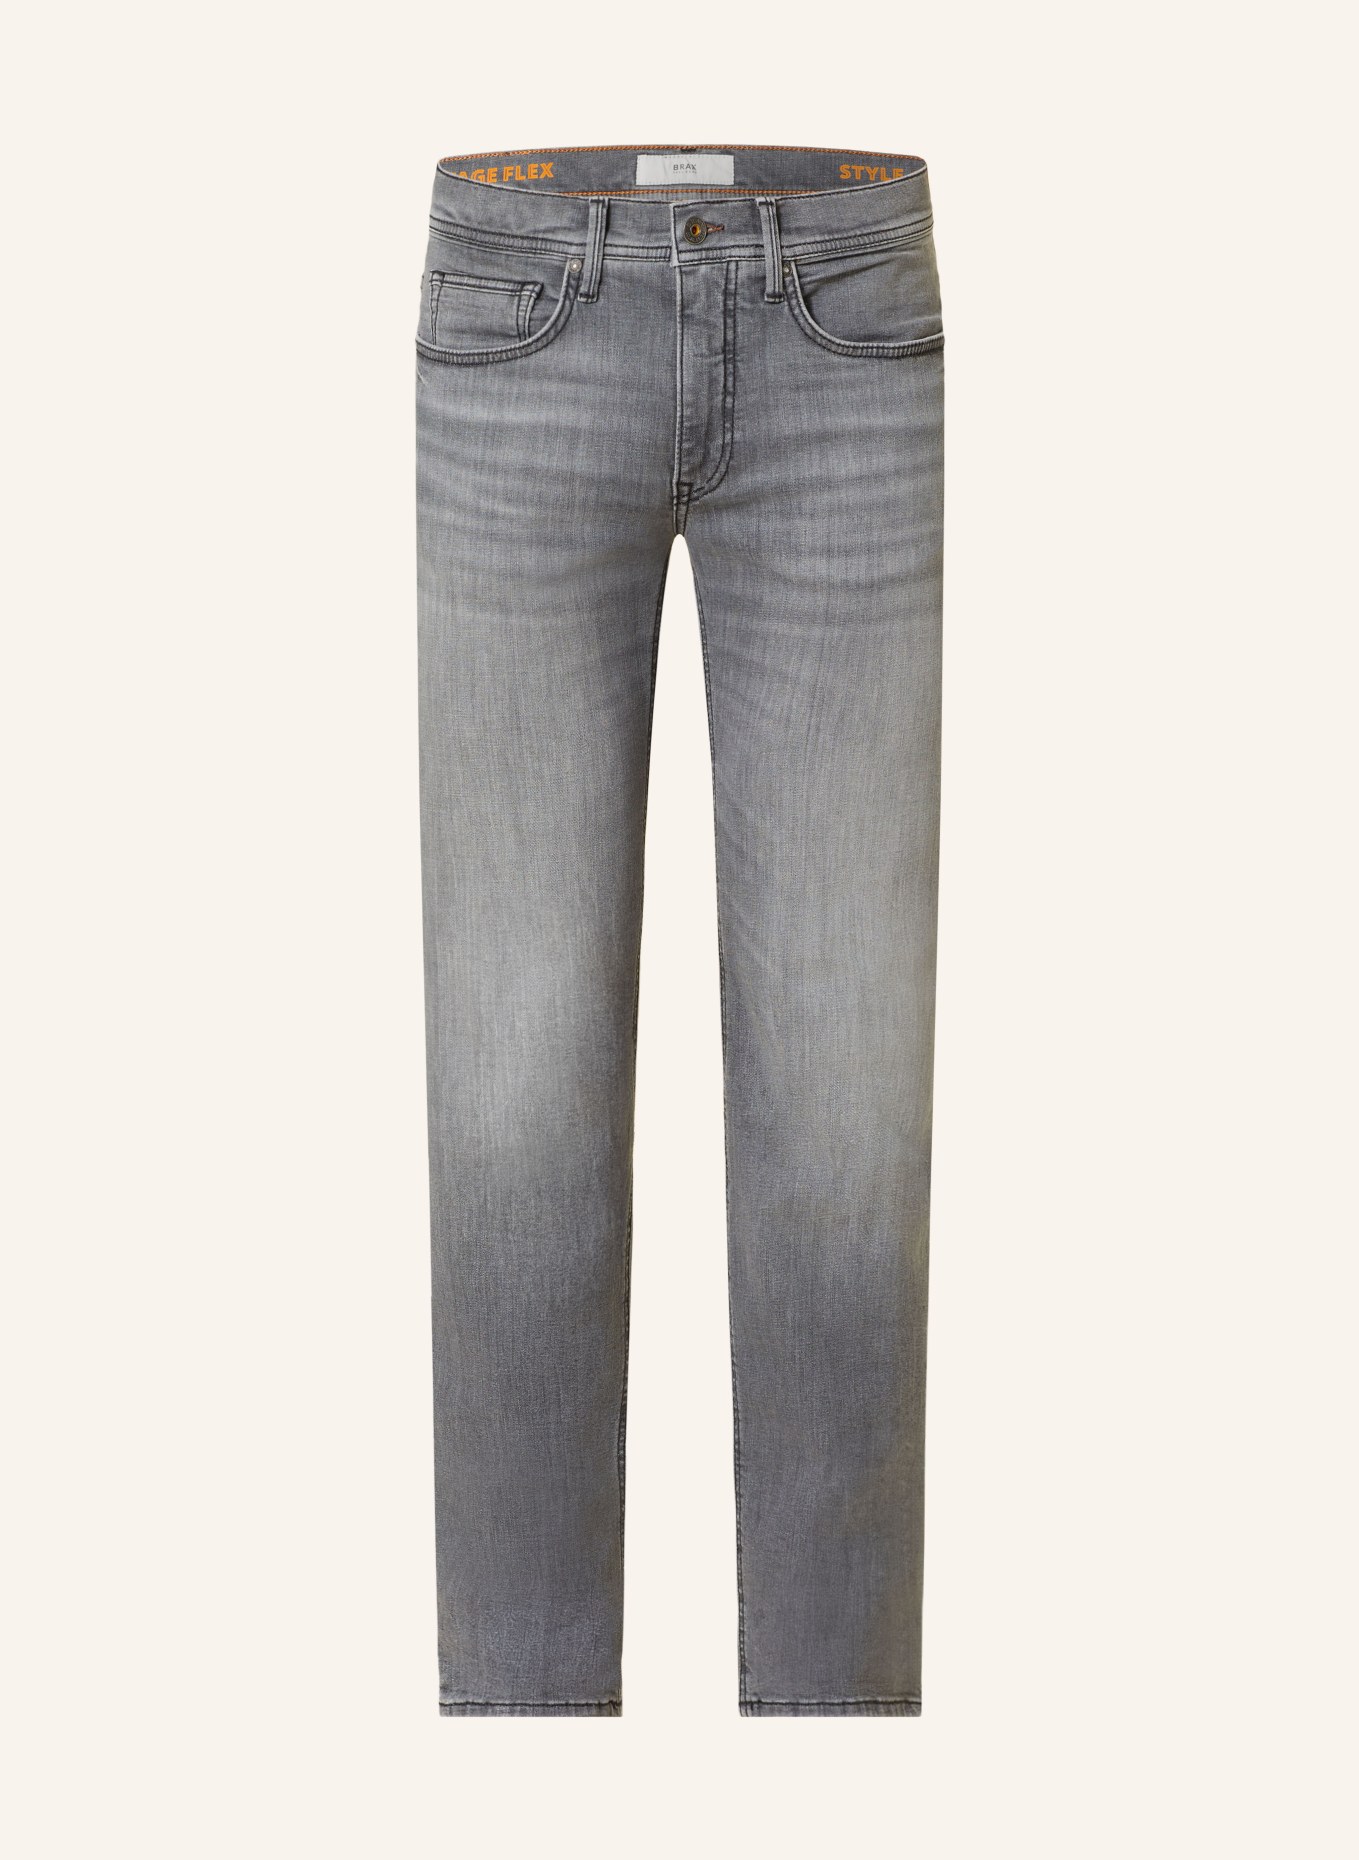 BRAX Jeans CHRIS Slim Fit, Farbe: 06 06 (Bild 1)